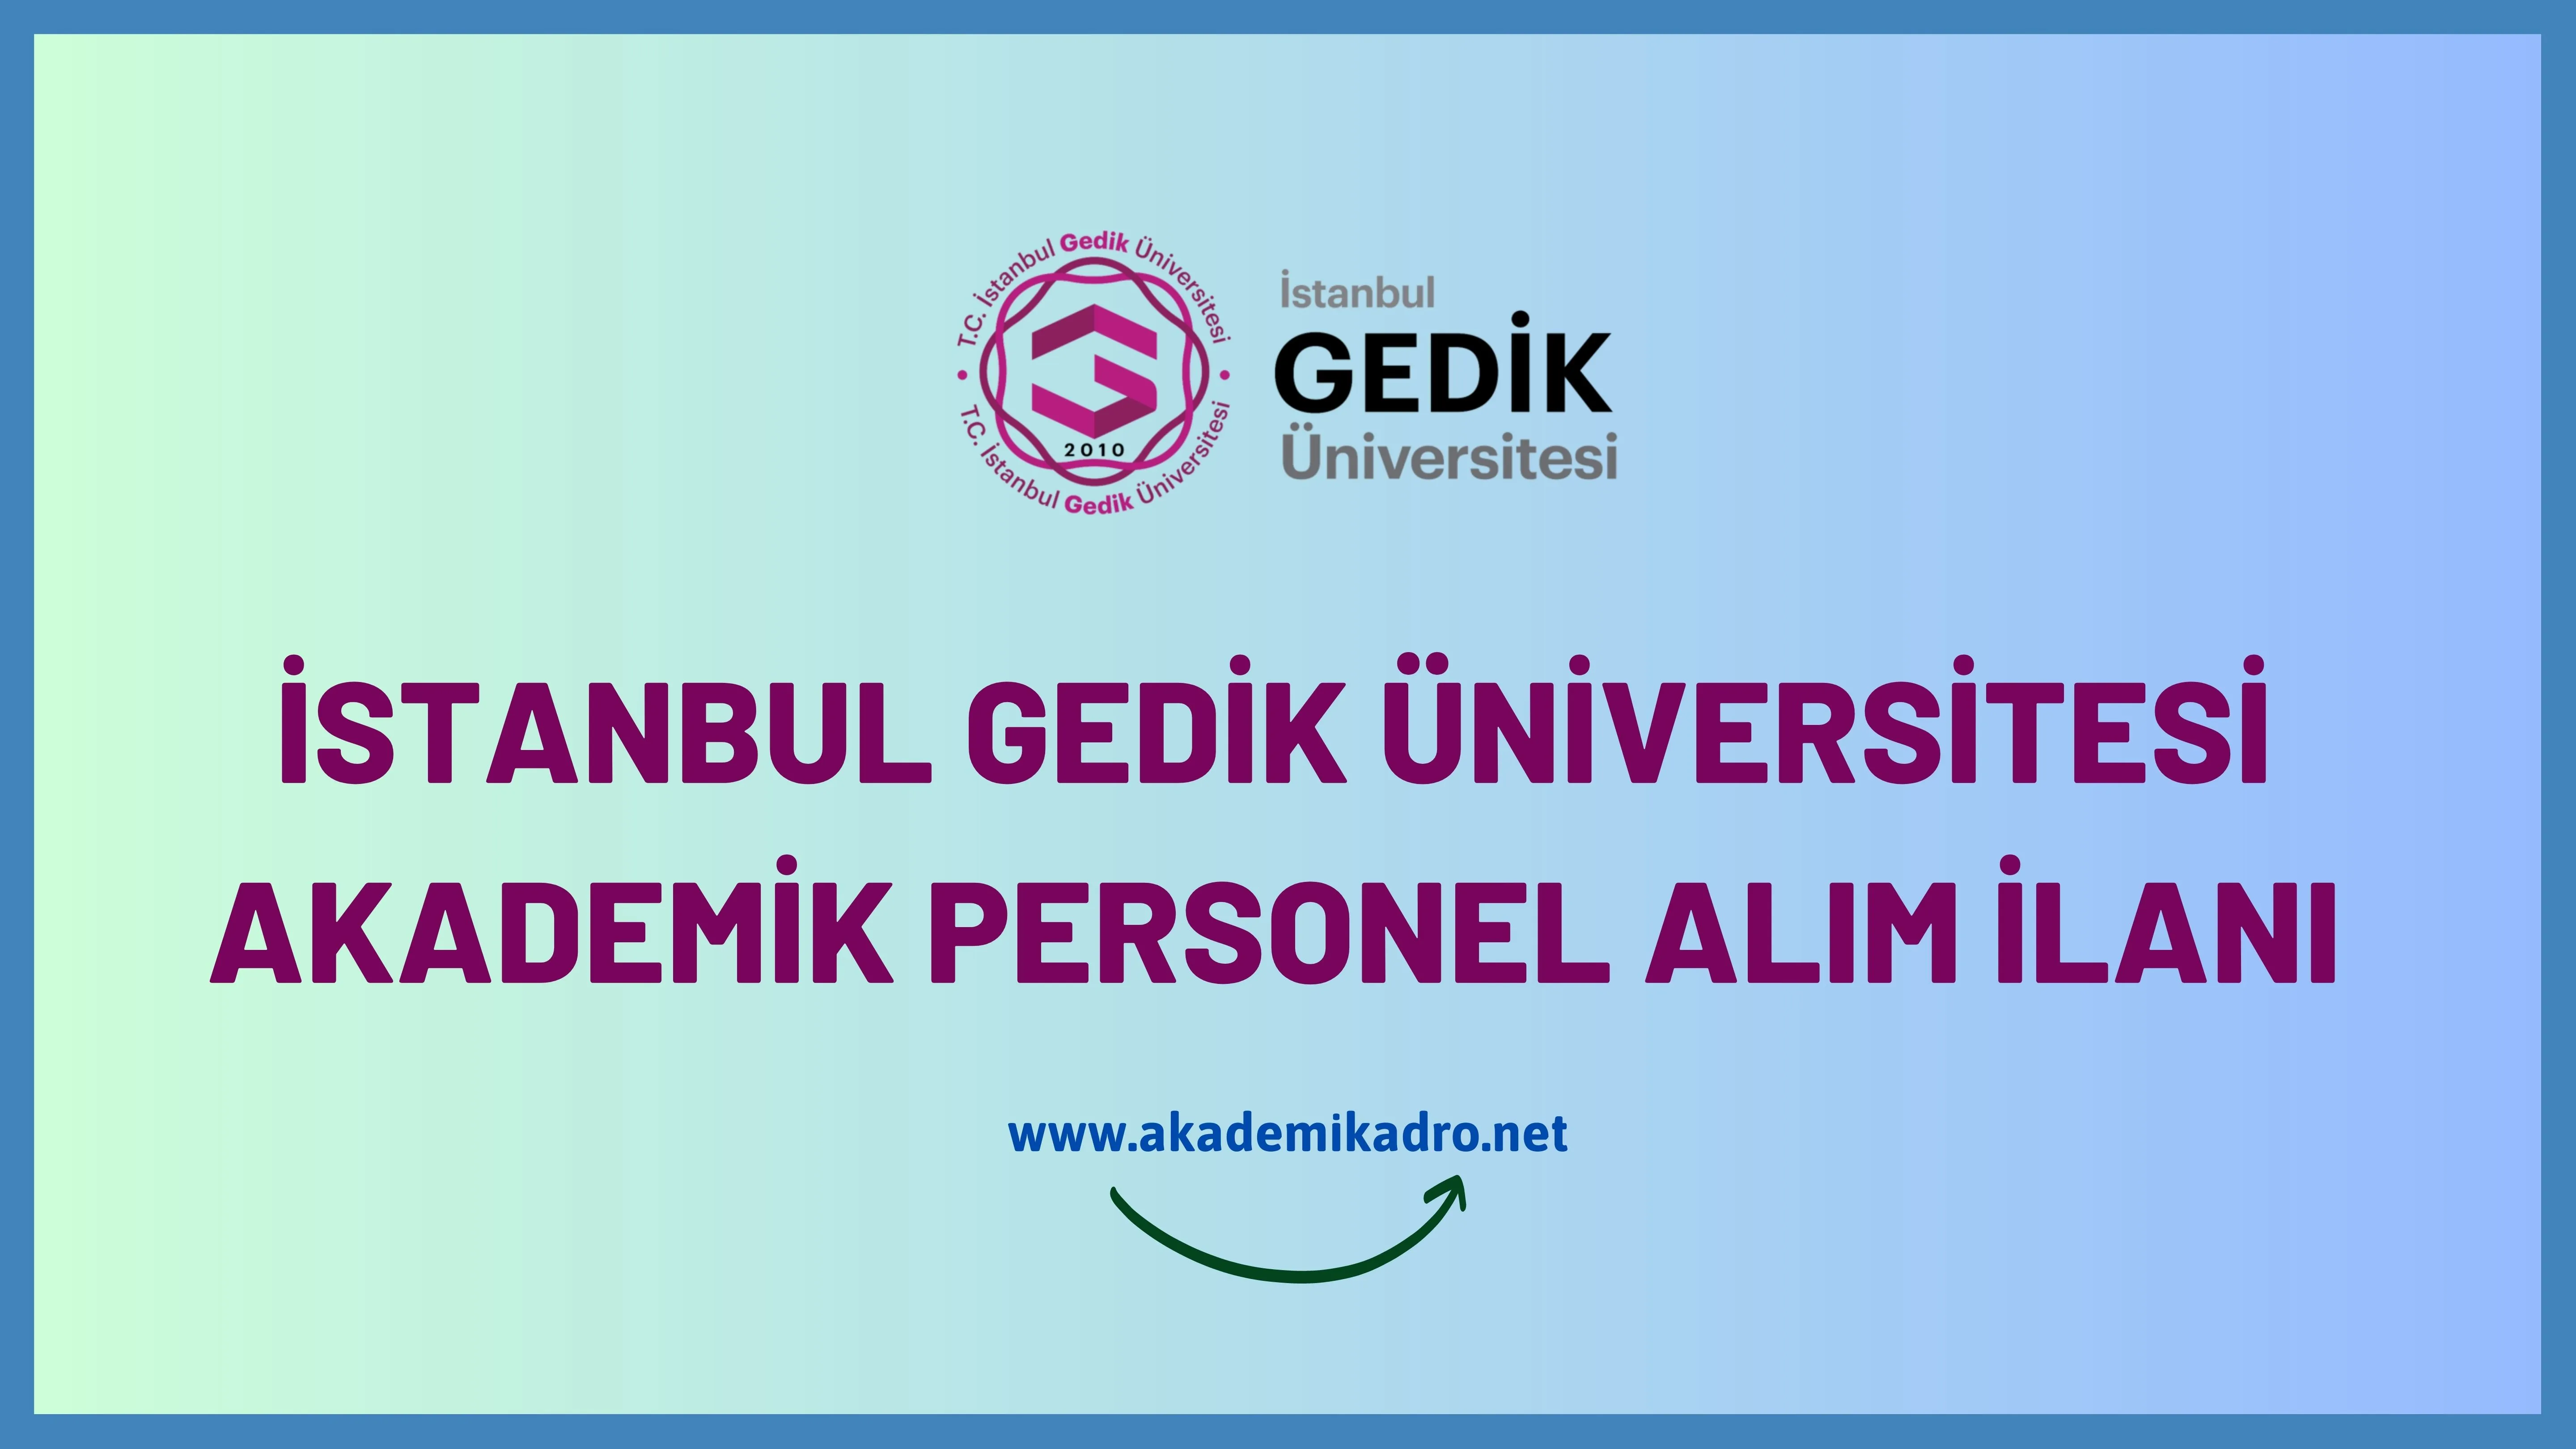 İstanbul Gedik Üniversitesi 2 Öğretim üyesi alacak.